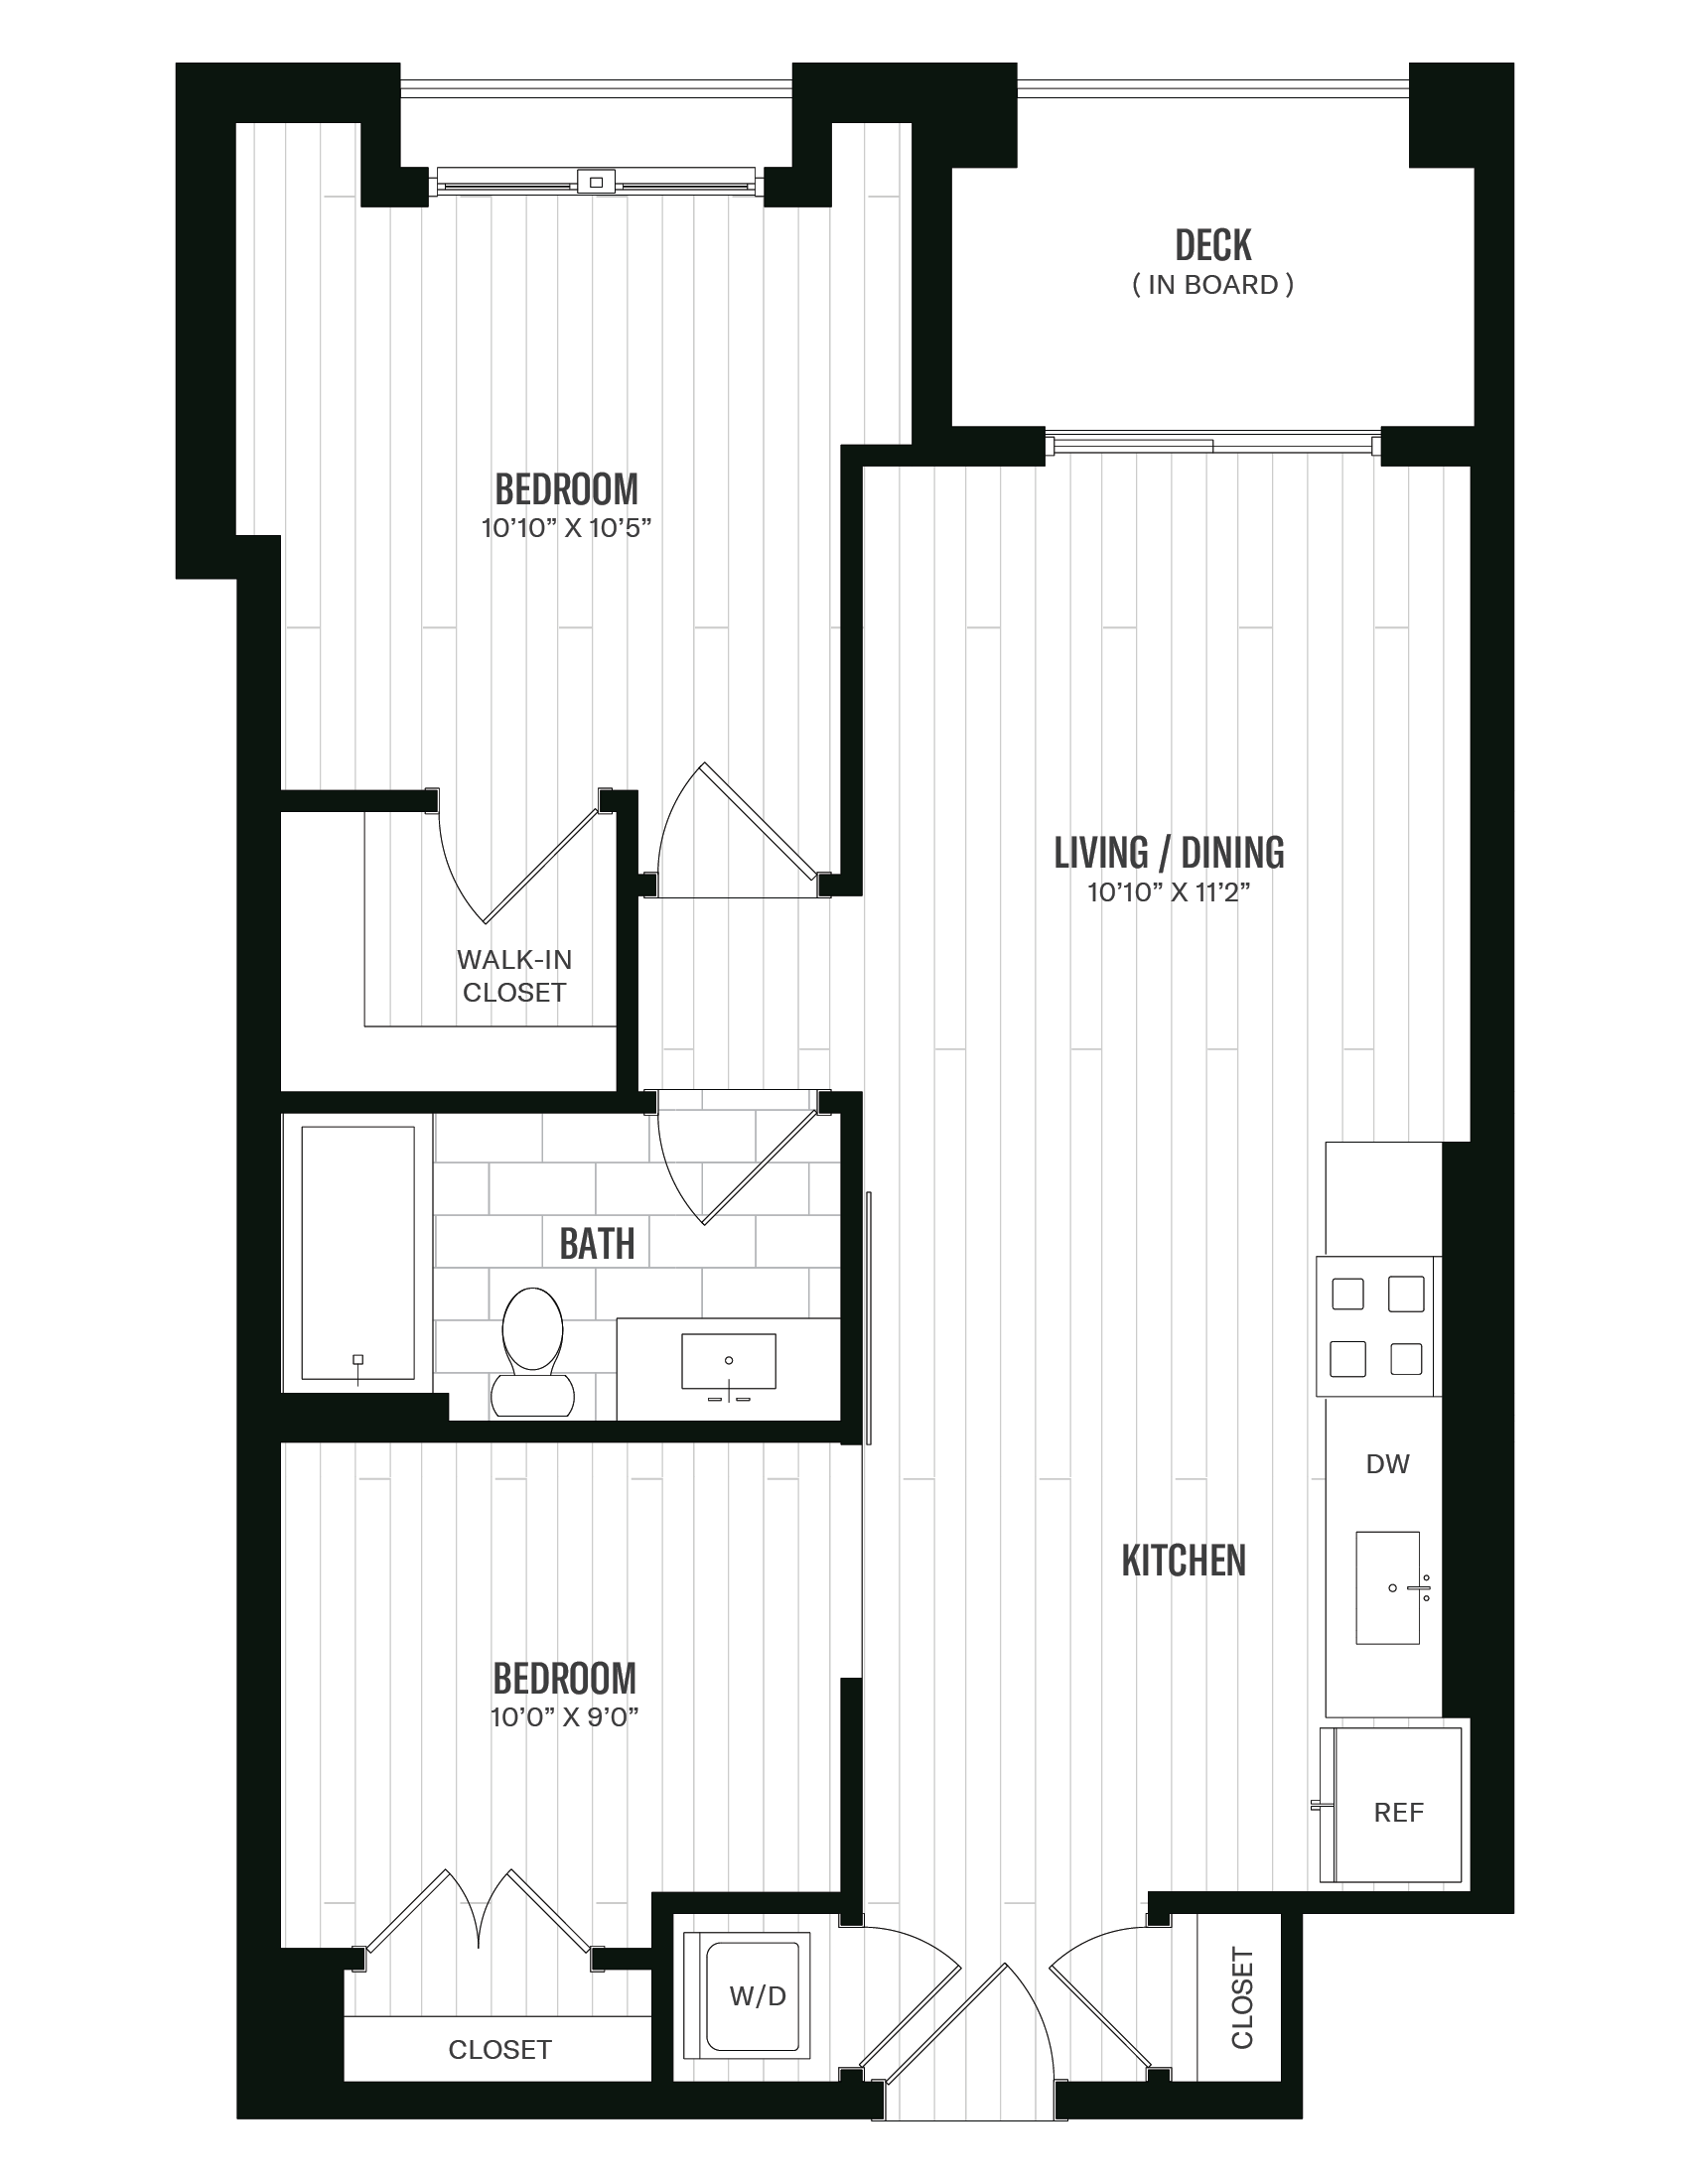 Floorplan image of unit 444